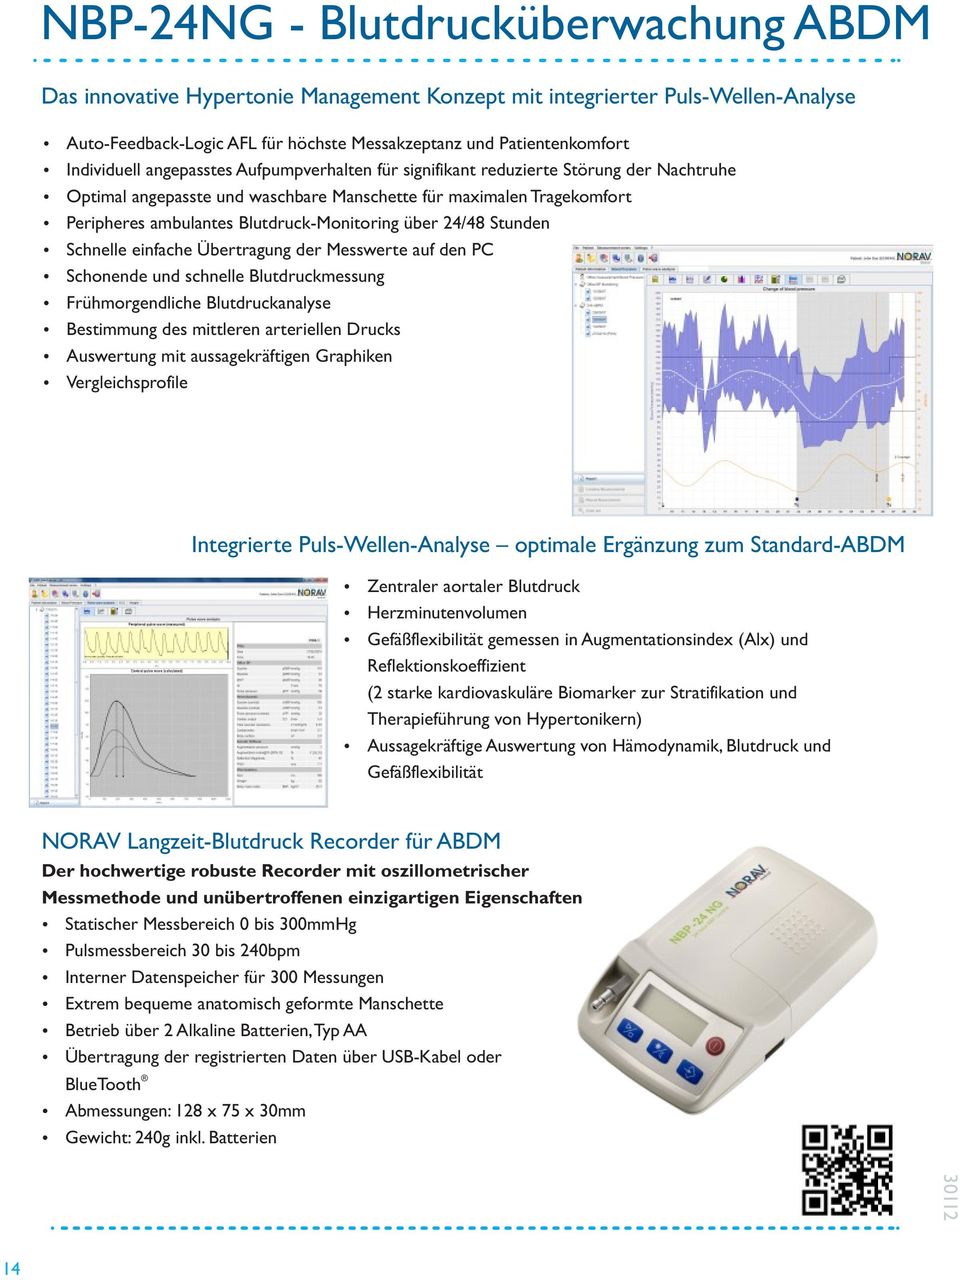 Blutdruck-Monitoring über 24/48 Stunden Ÿ Schnelle einfache Übertragung der Messwerte auf den PC Ÿ Schonende und schnelle Blutdruckmessung Ÿ Frühmorgendliche Blutdruckanalyse Ÿ Bestimmung des